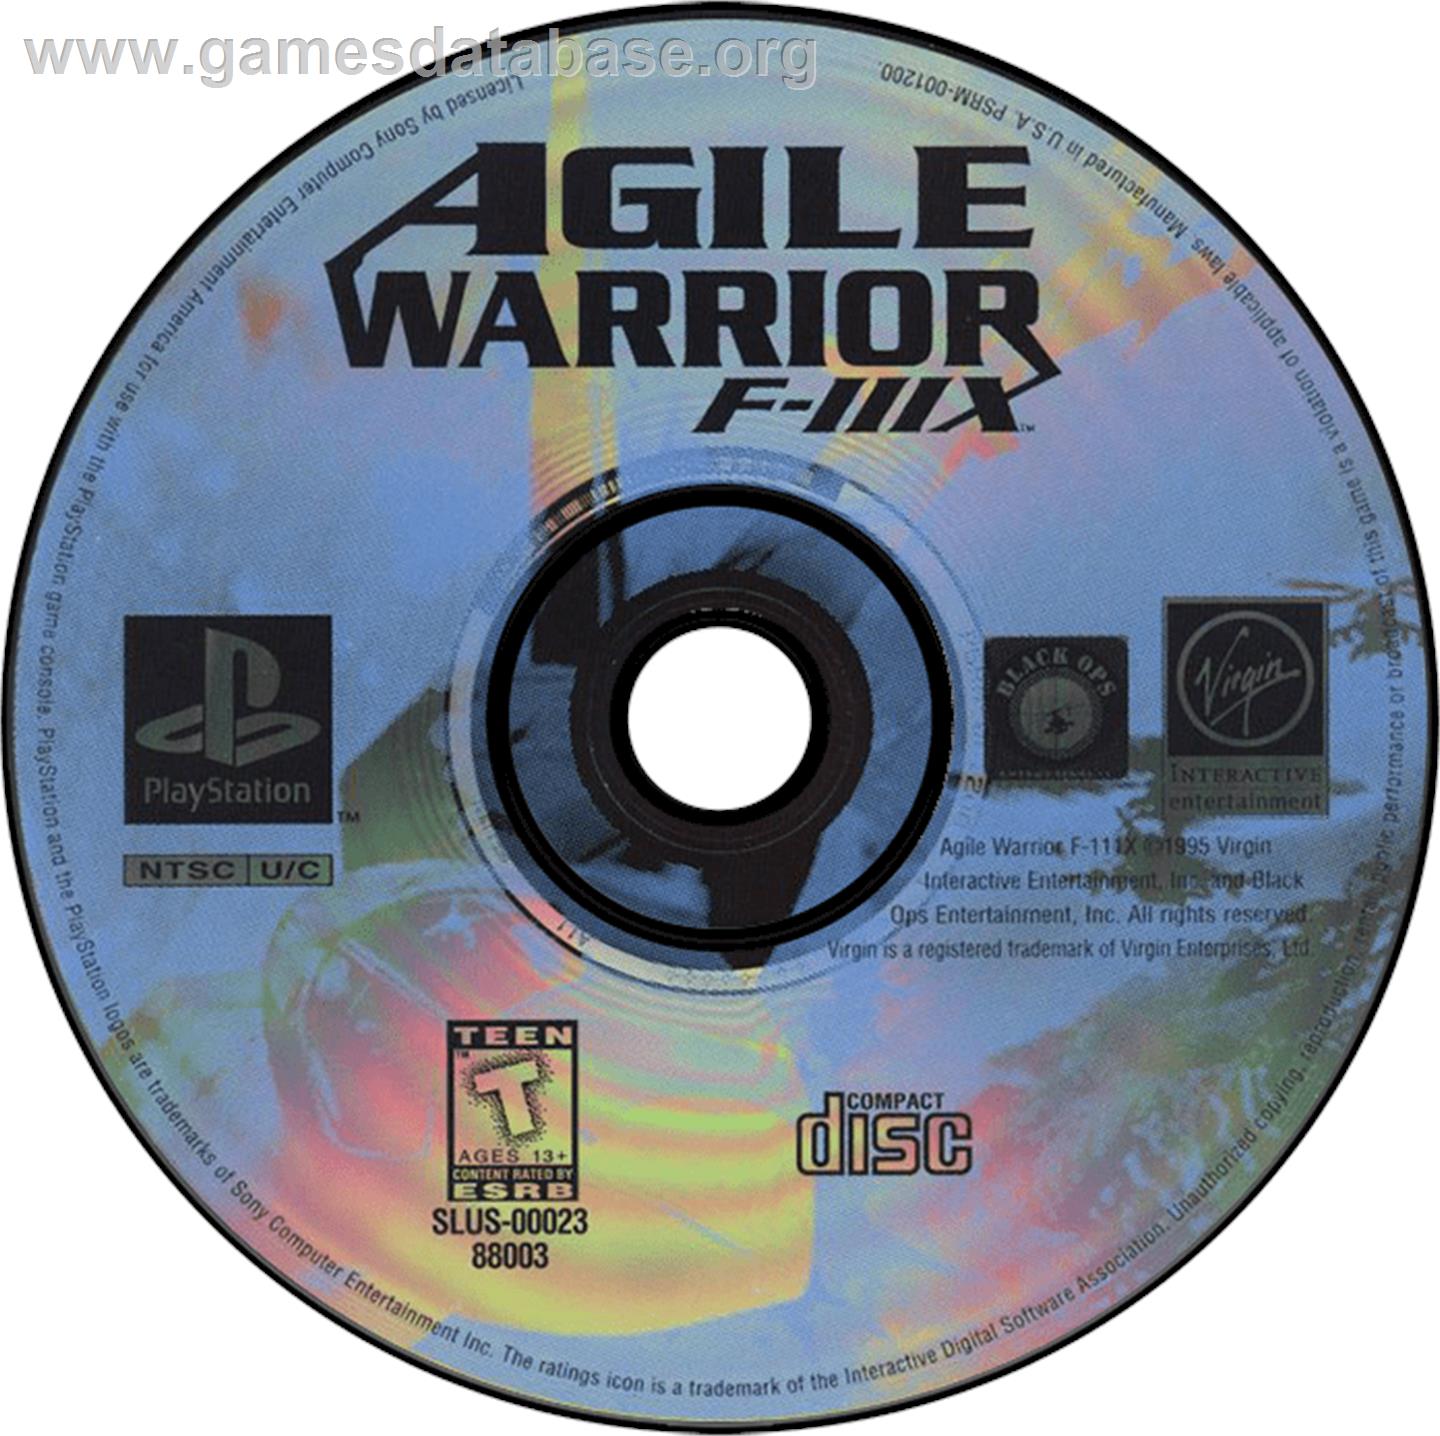 Agile Warrior: F-111X - Sony Playstation - Artwork - Disc